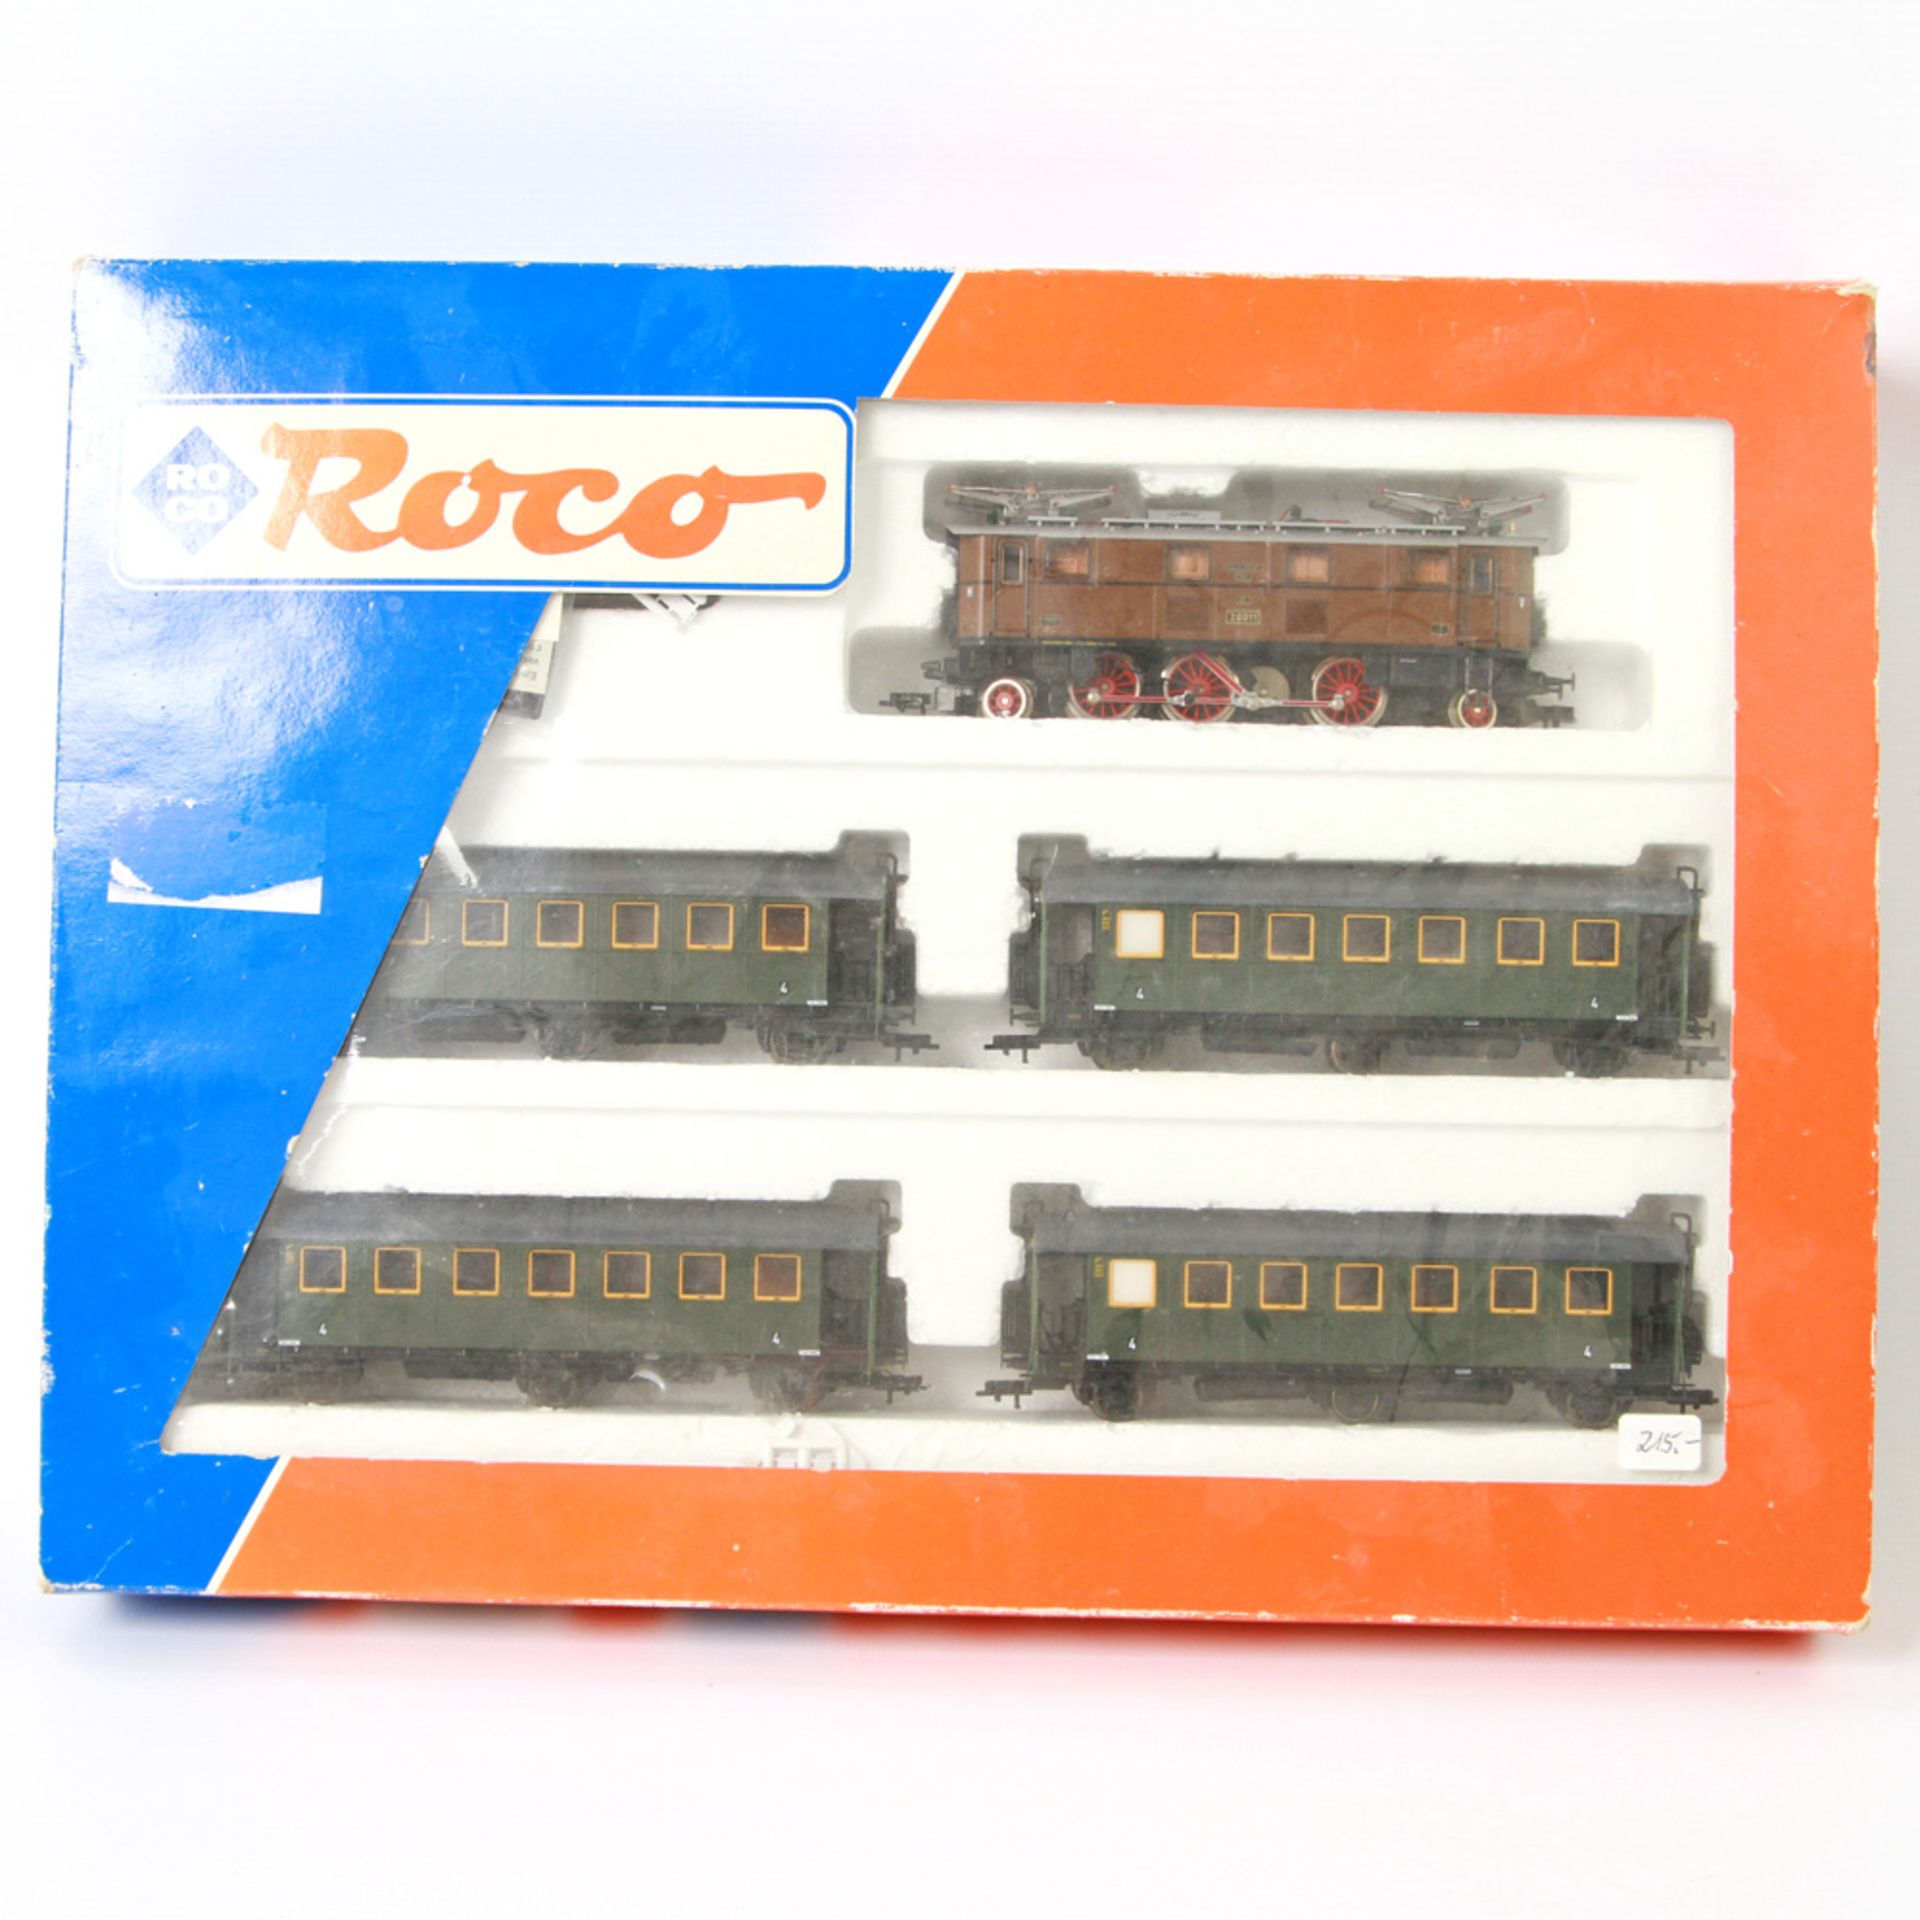 ROCO Zugpackung 43048, Spur H0, bestehend aus E-Lok BN 20011 und vier grünen Wagons. Wohl in